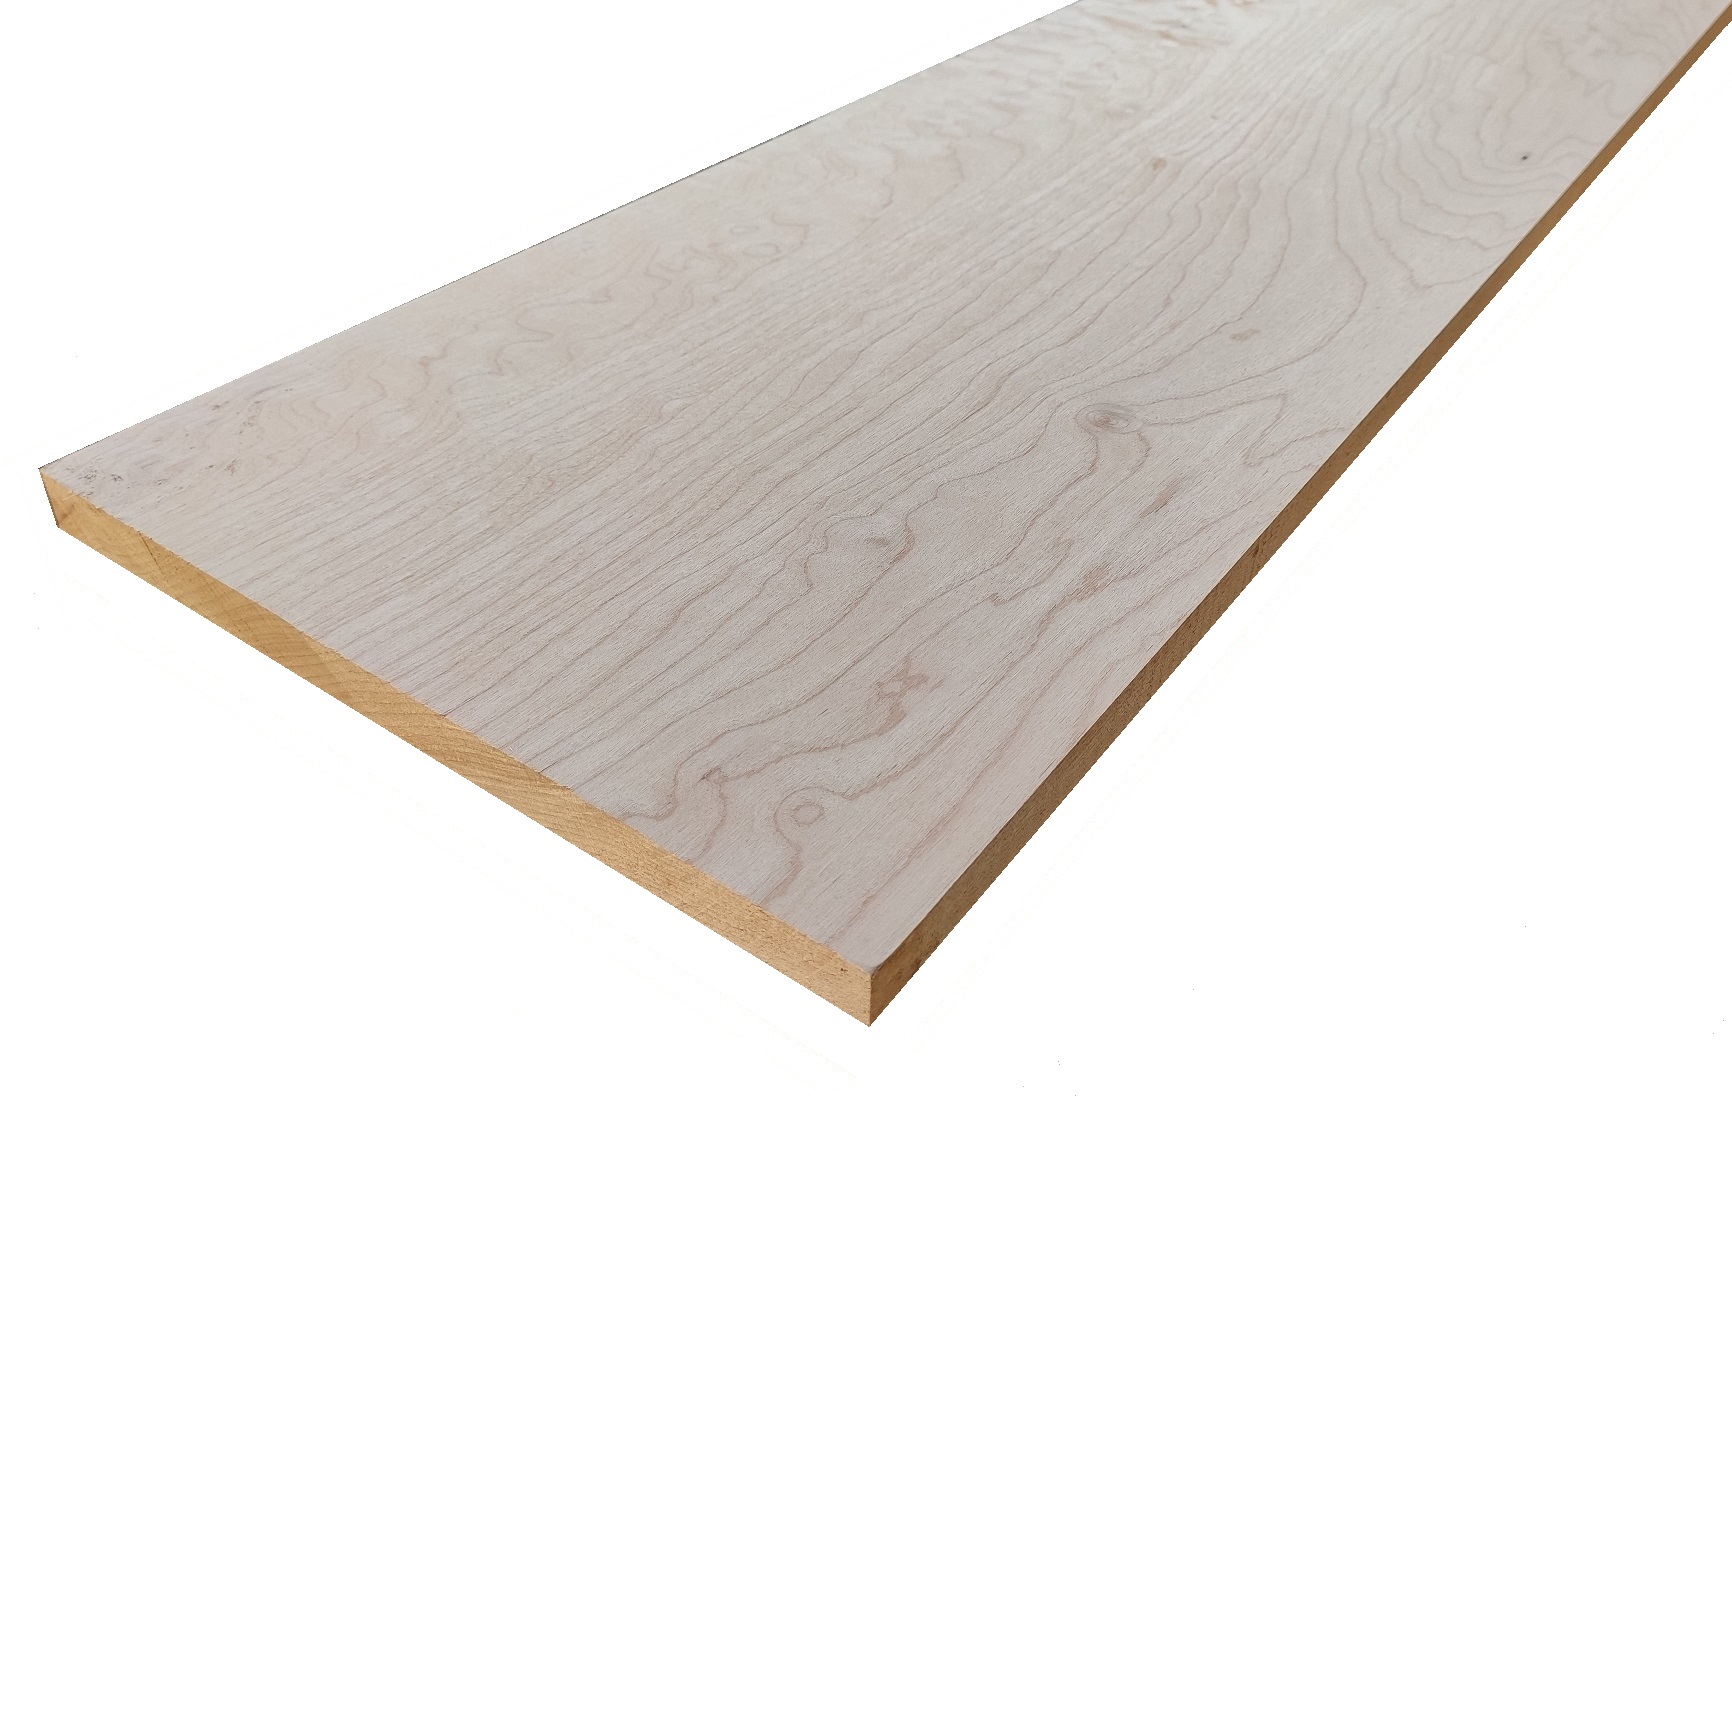 Tavola legno Acero Pacific Coast Maple Refilato Piallato mm 20 x 110 x 2400